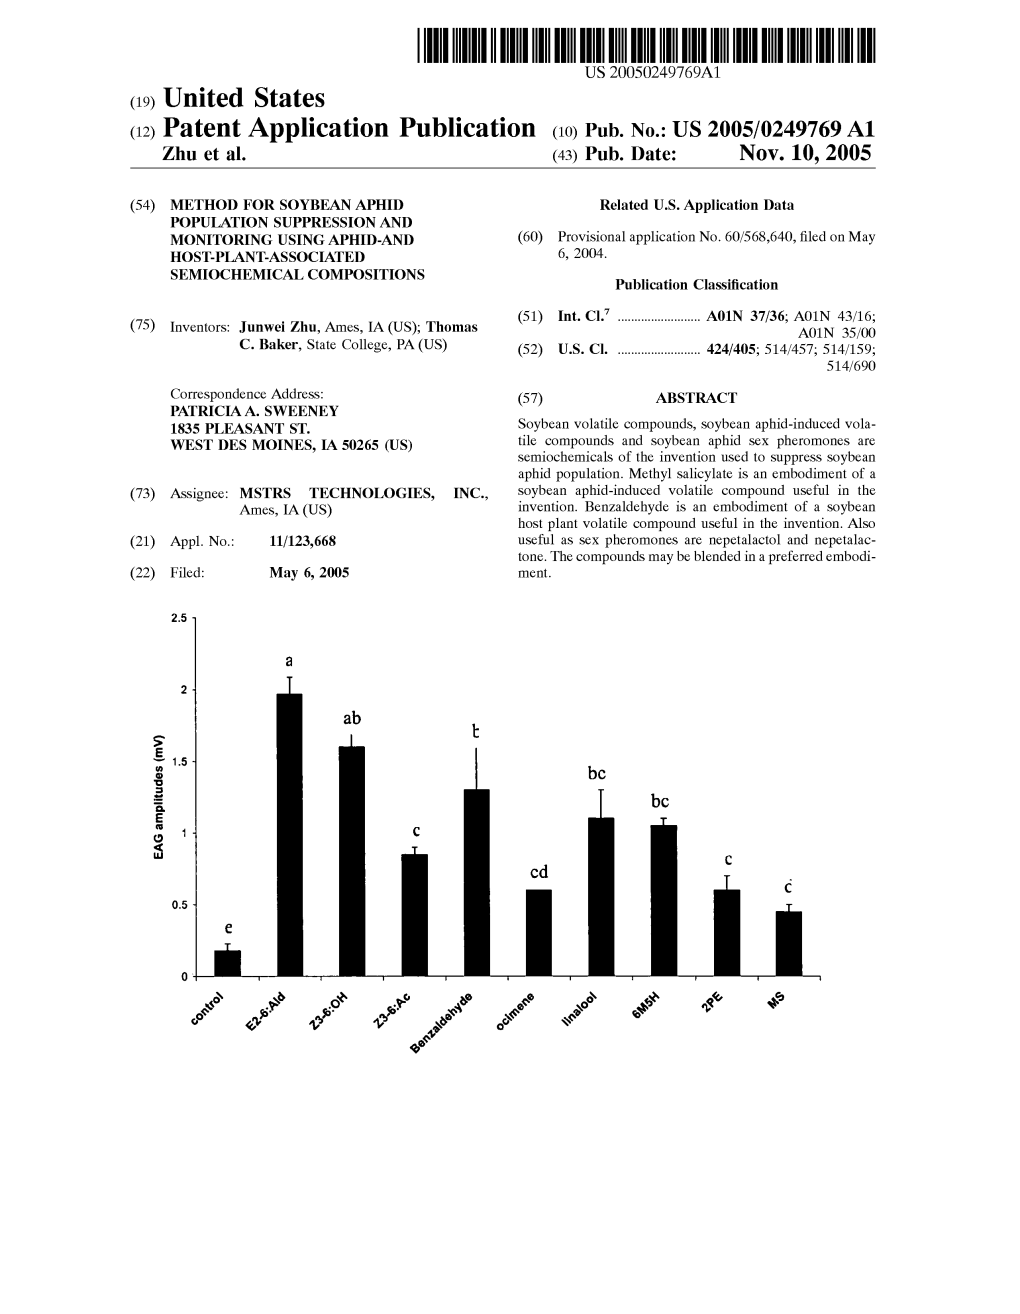 (12) Patent Application Publication (10) Pub. No.: US 2005/0249769 A1 Zhu Et Al